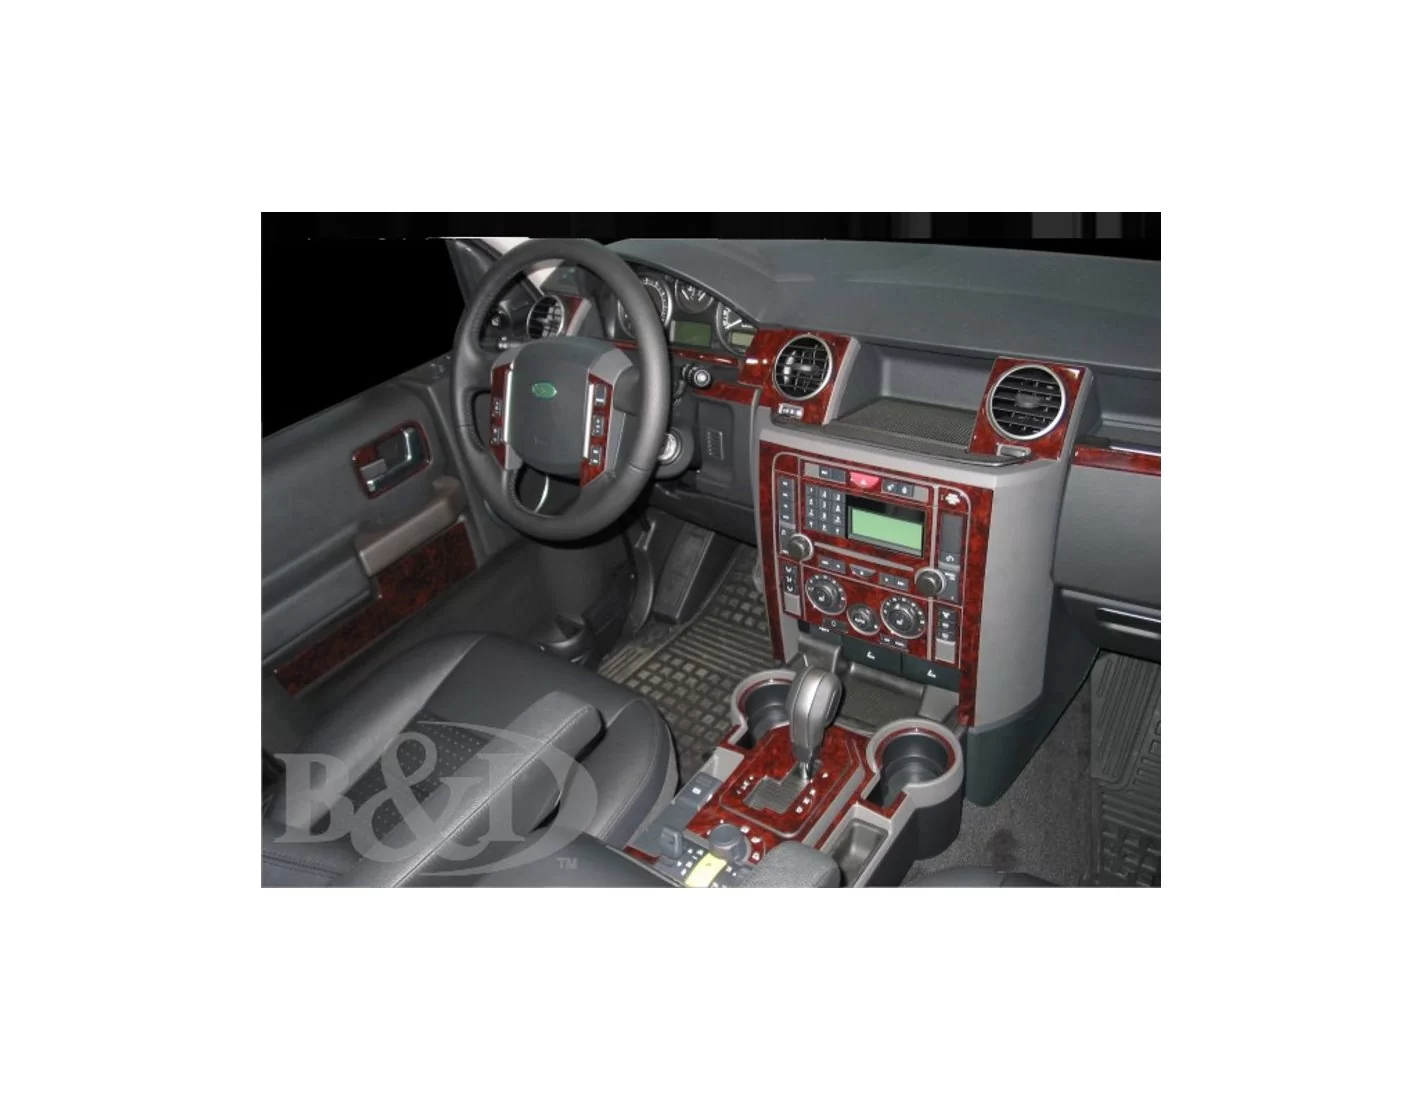 Land Rover Discovery 3 2005-UP Voll Satz BD innenausstattung armaturendekor cockpit dekor - 1- Cockpit Dekor Innenraum